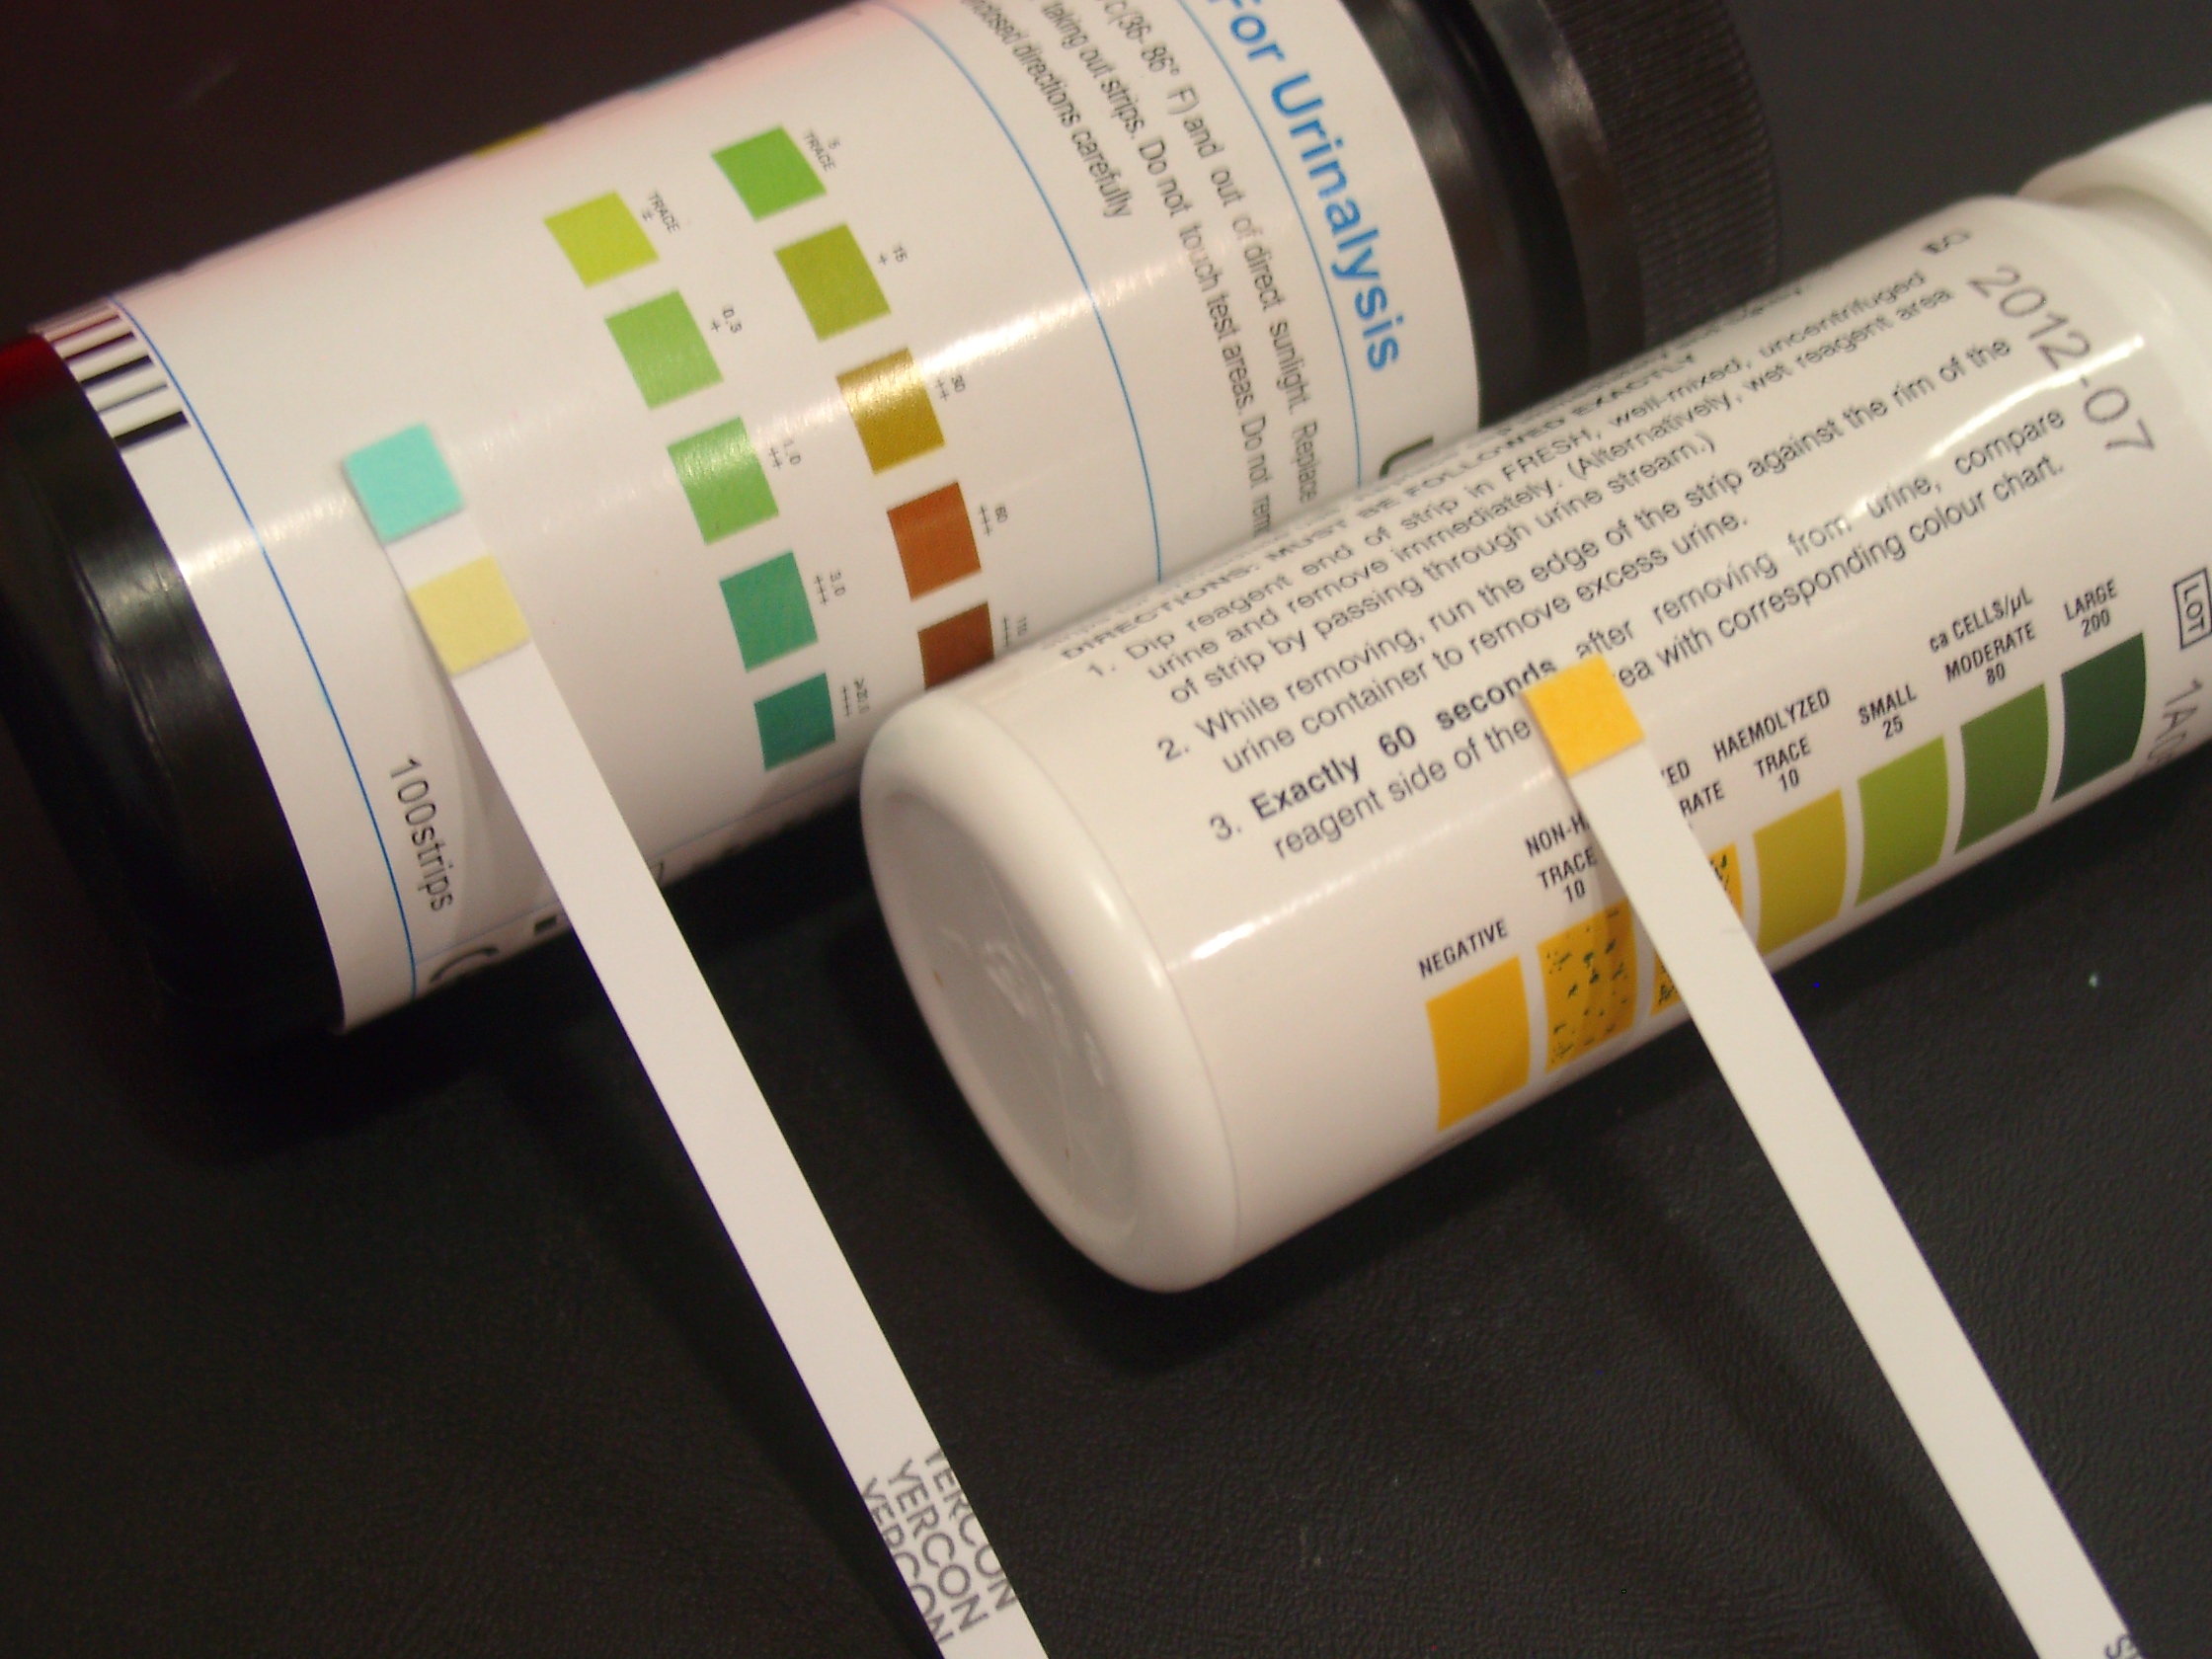 蛋白尿測試試紙是慢性腎病早期診斷較常用的測試方式